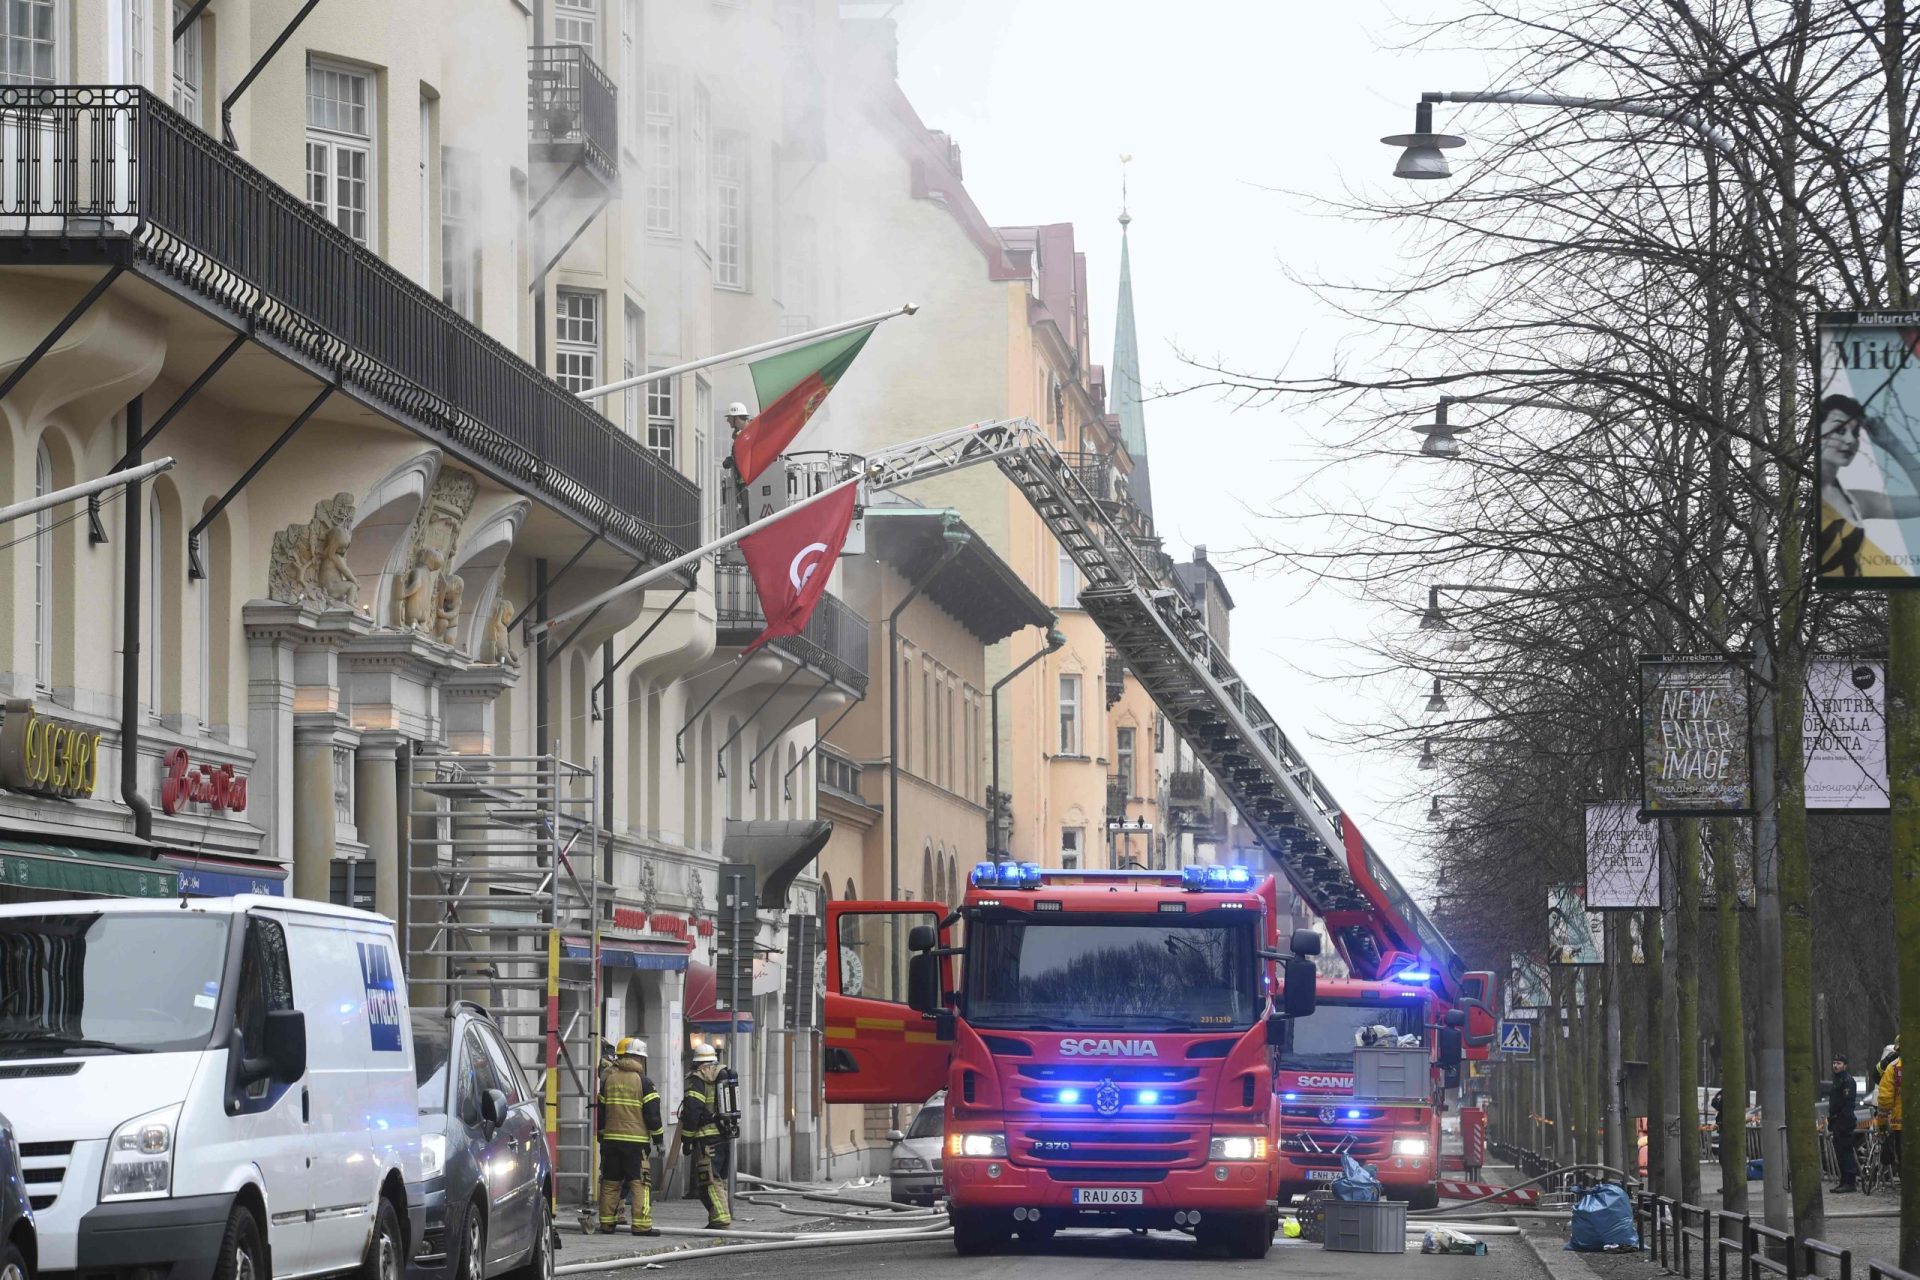 Suécia. Incêndio na embaixada portuguesa foi provocado por “homem muito perturbado”